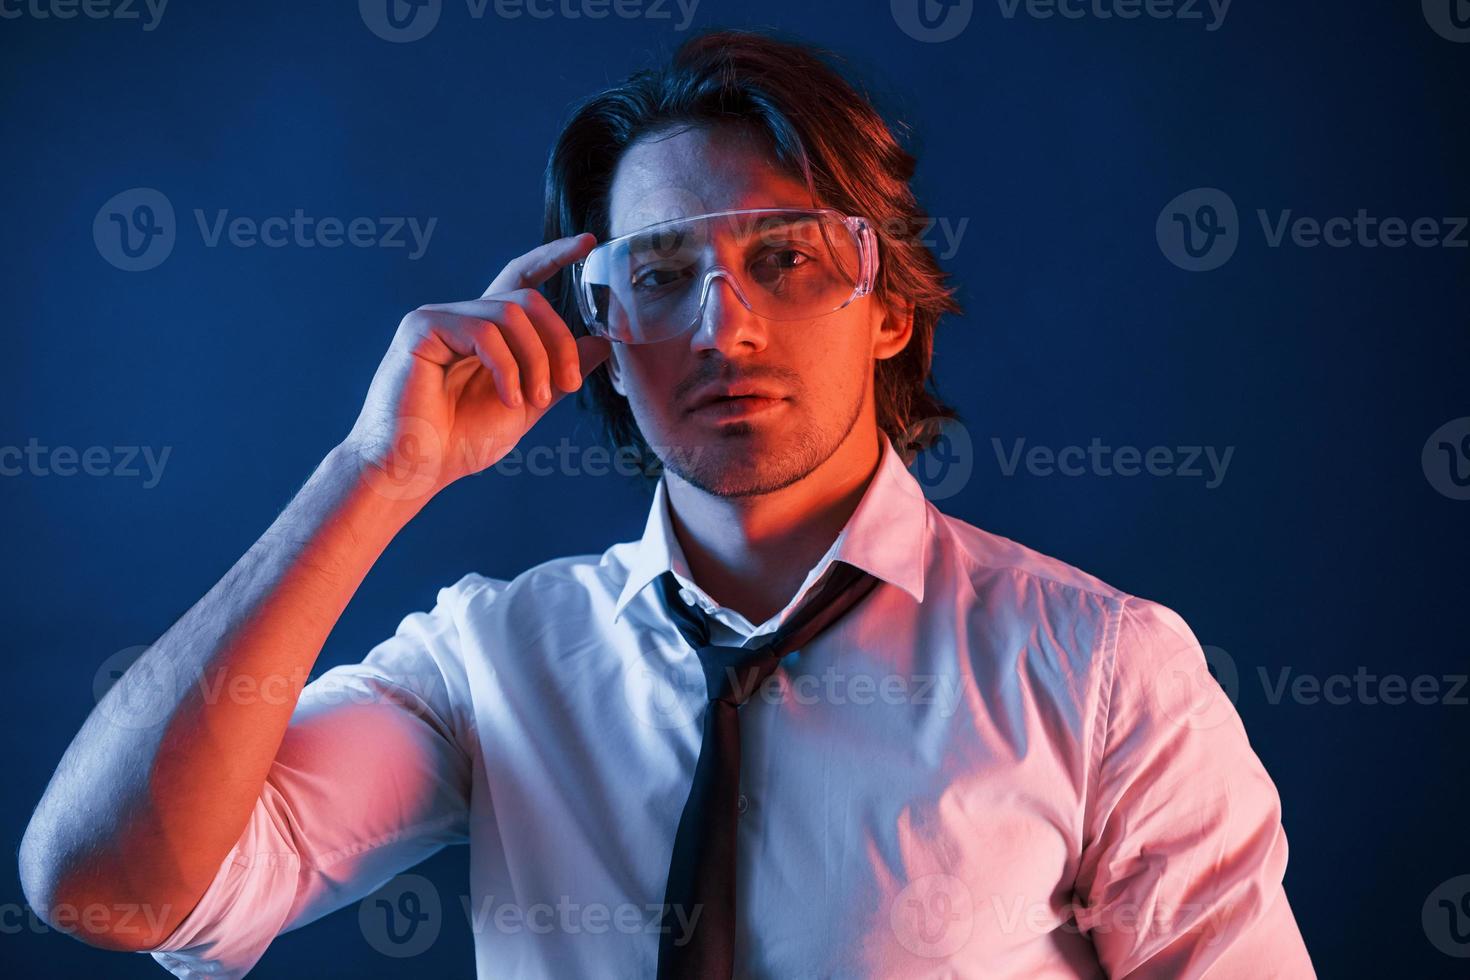 homem bonito de óculos e terno e gravata está no estúdio com iluminação neon azul foto